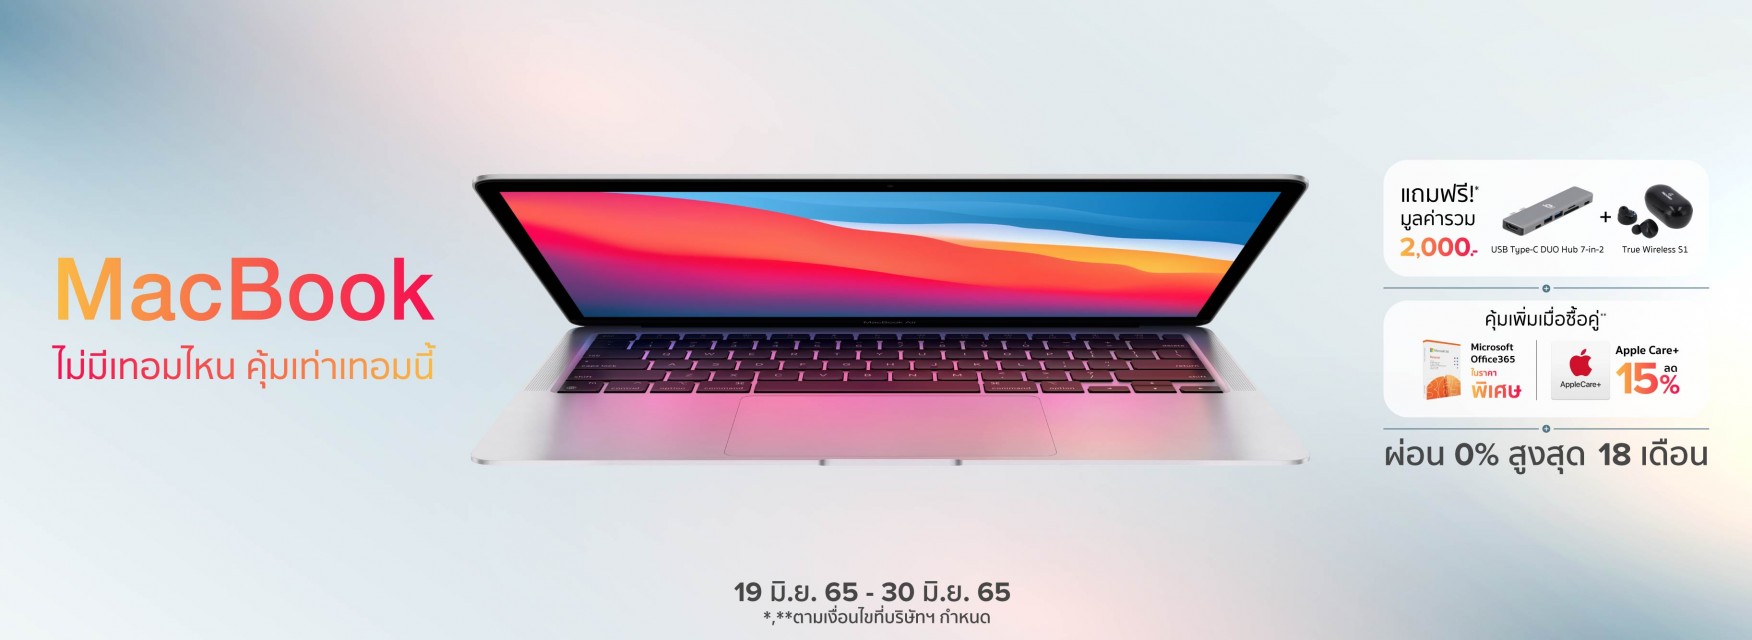 MacBook ไม่มีเทอมไหน คุ้มค่าเท่าเทอมนี้